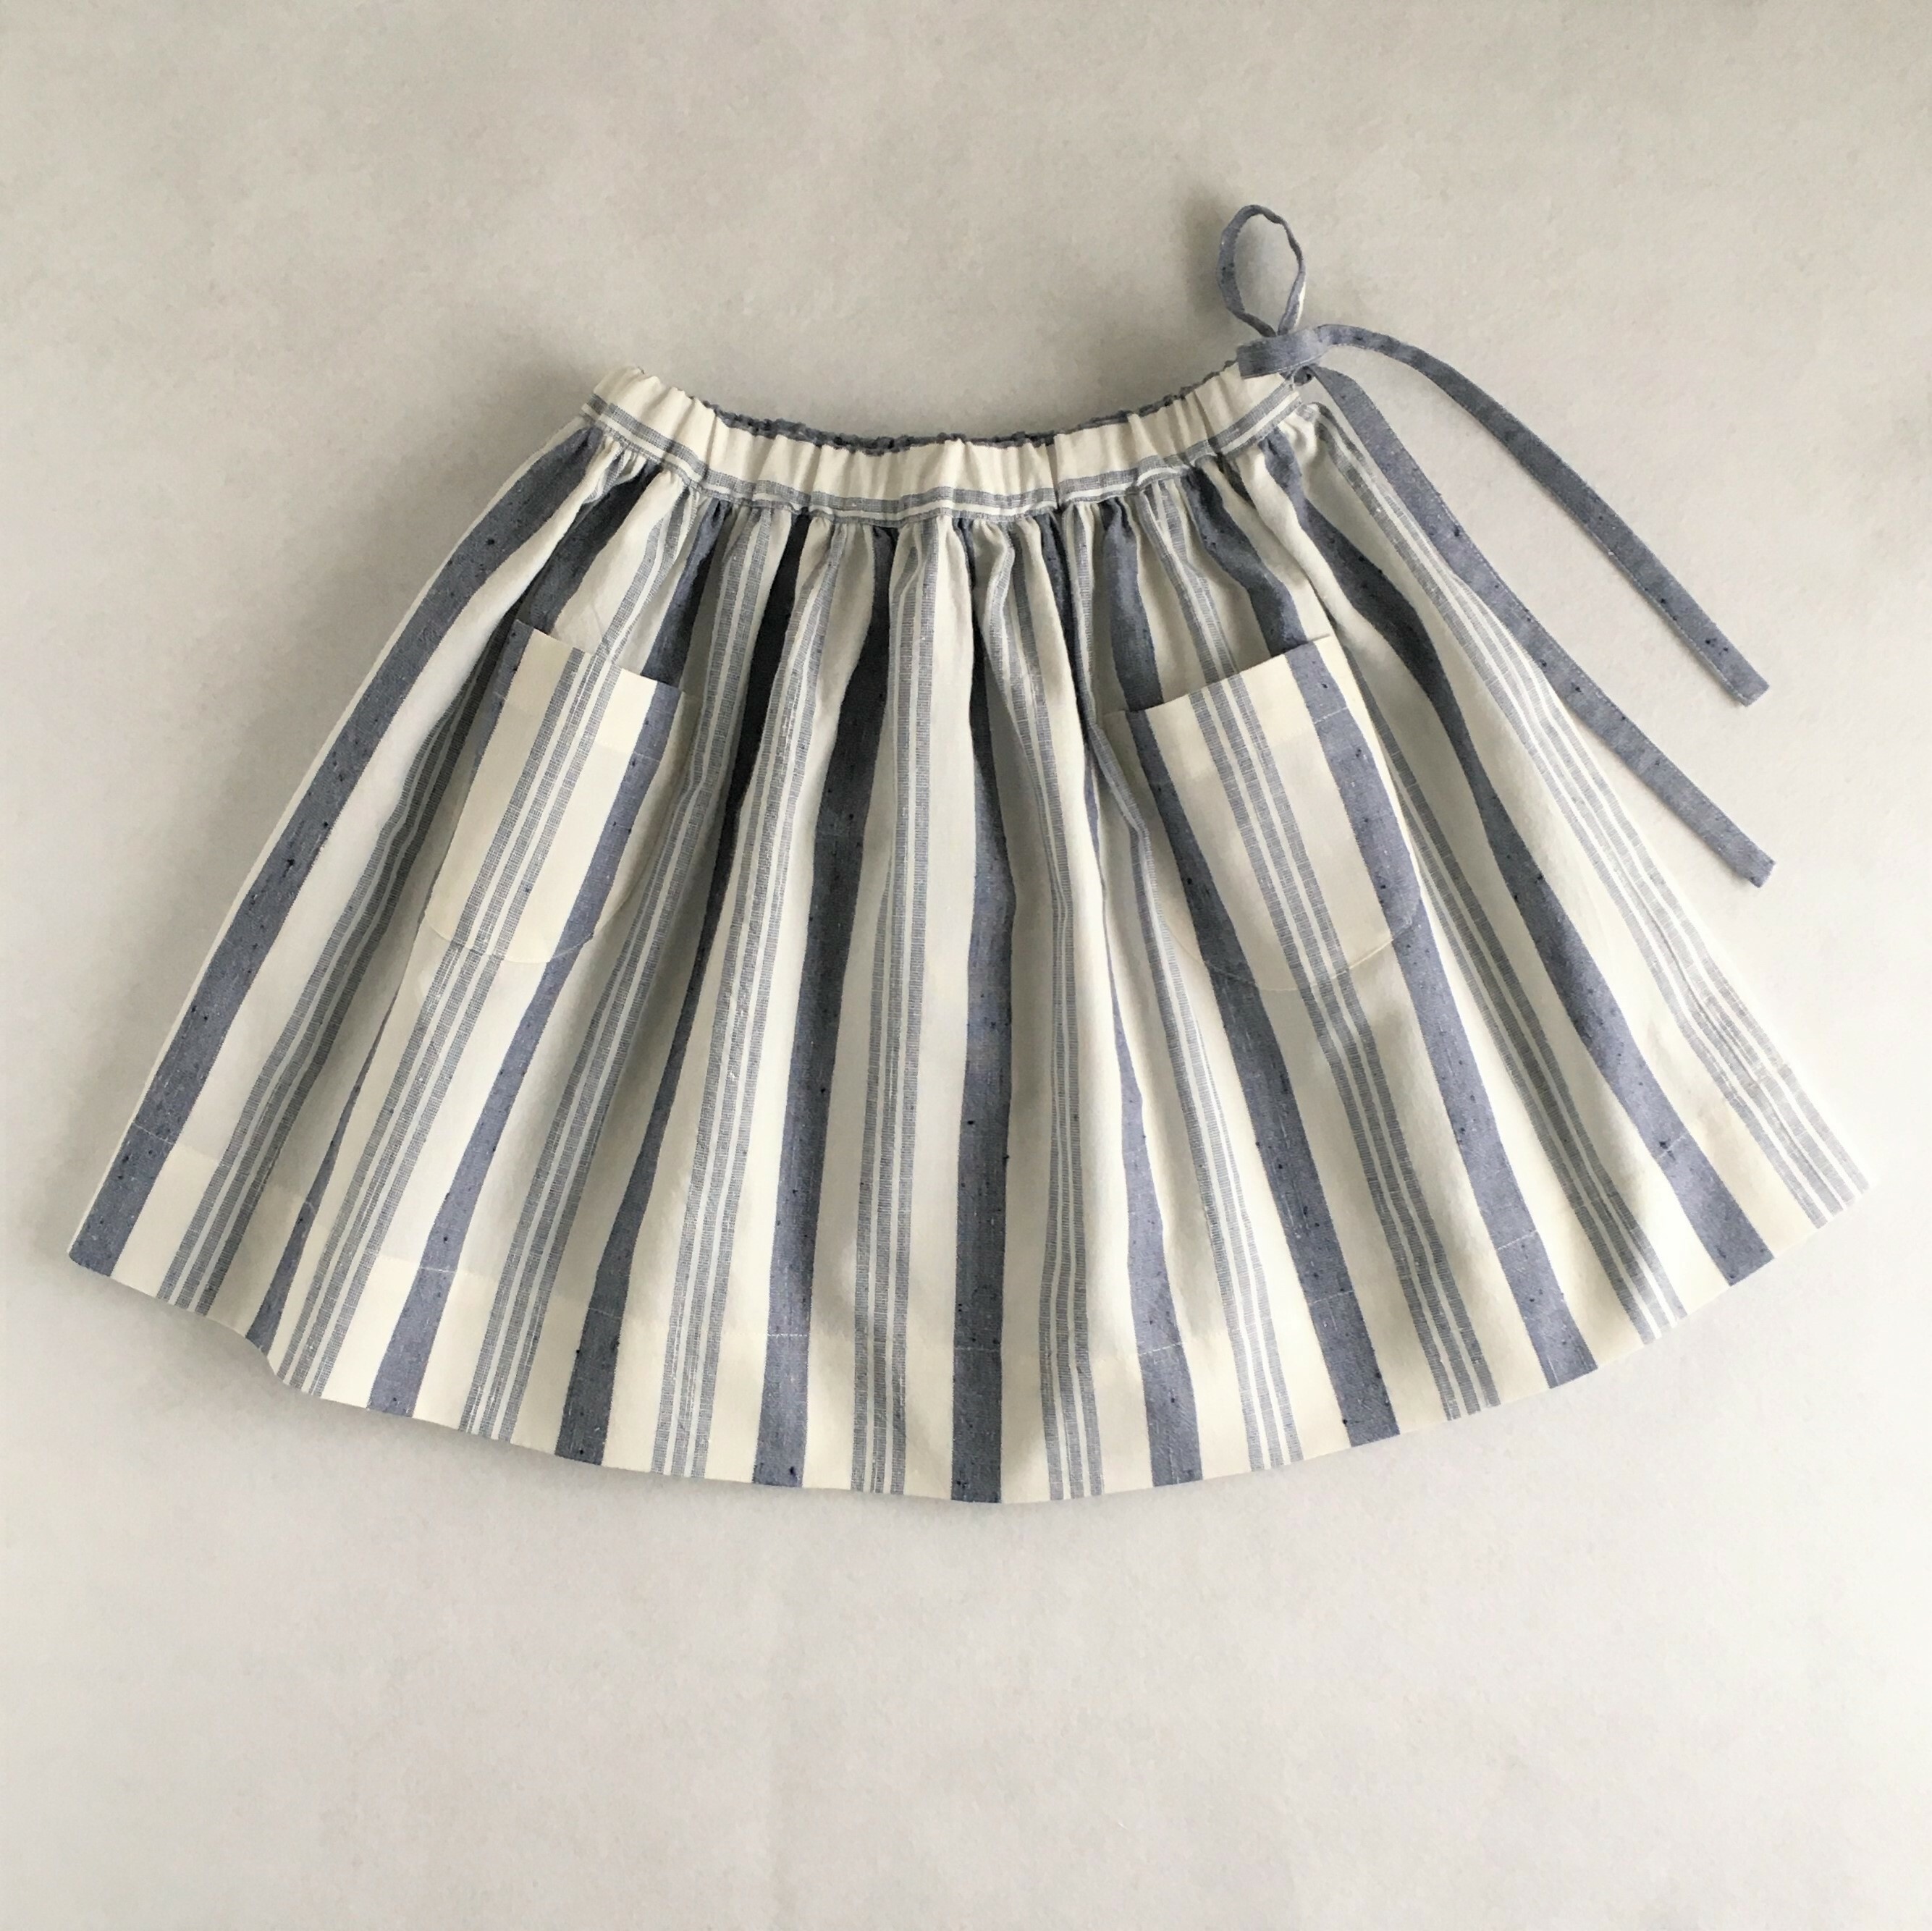 ギャザースカート 70 130サイズ 型紙 作り方のセット To Bo 1905 Ki Bo 1905 子供服の型紙 ショップ Tsukuro ツクロ